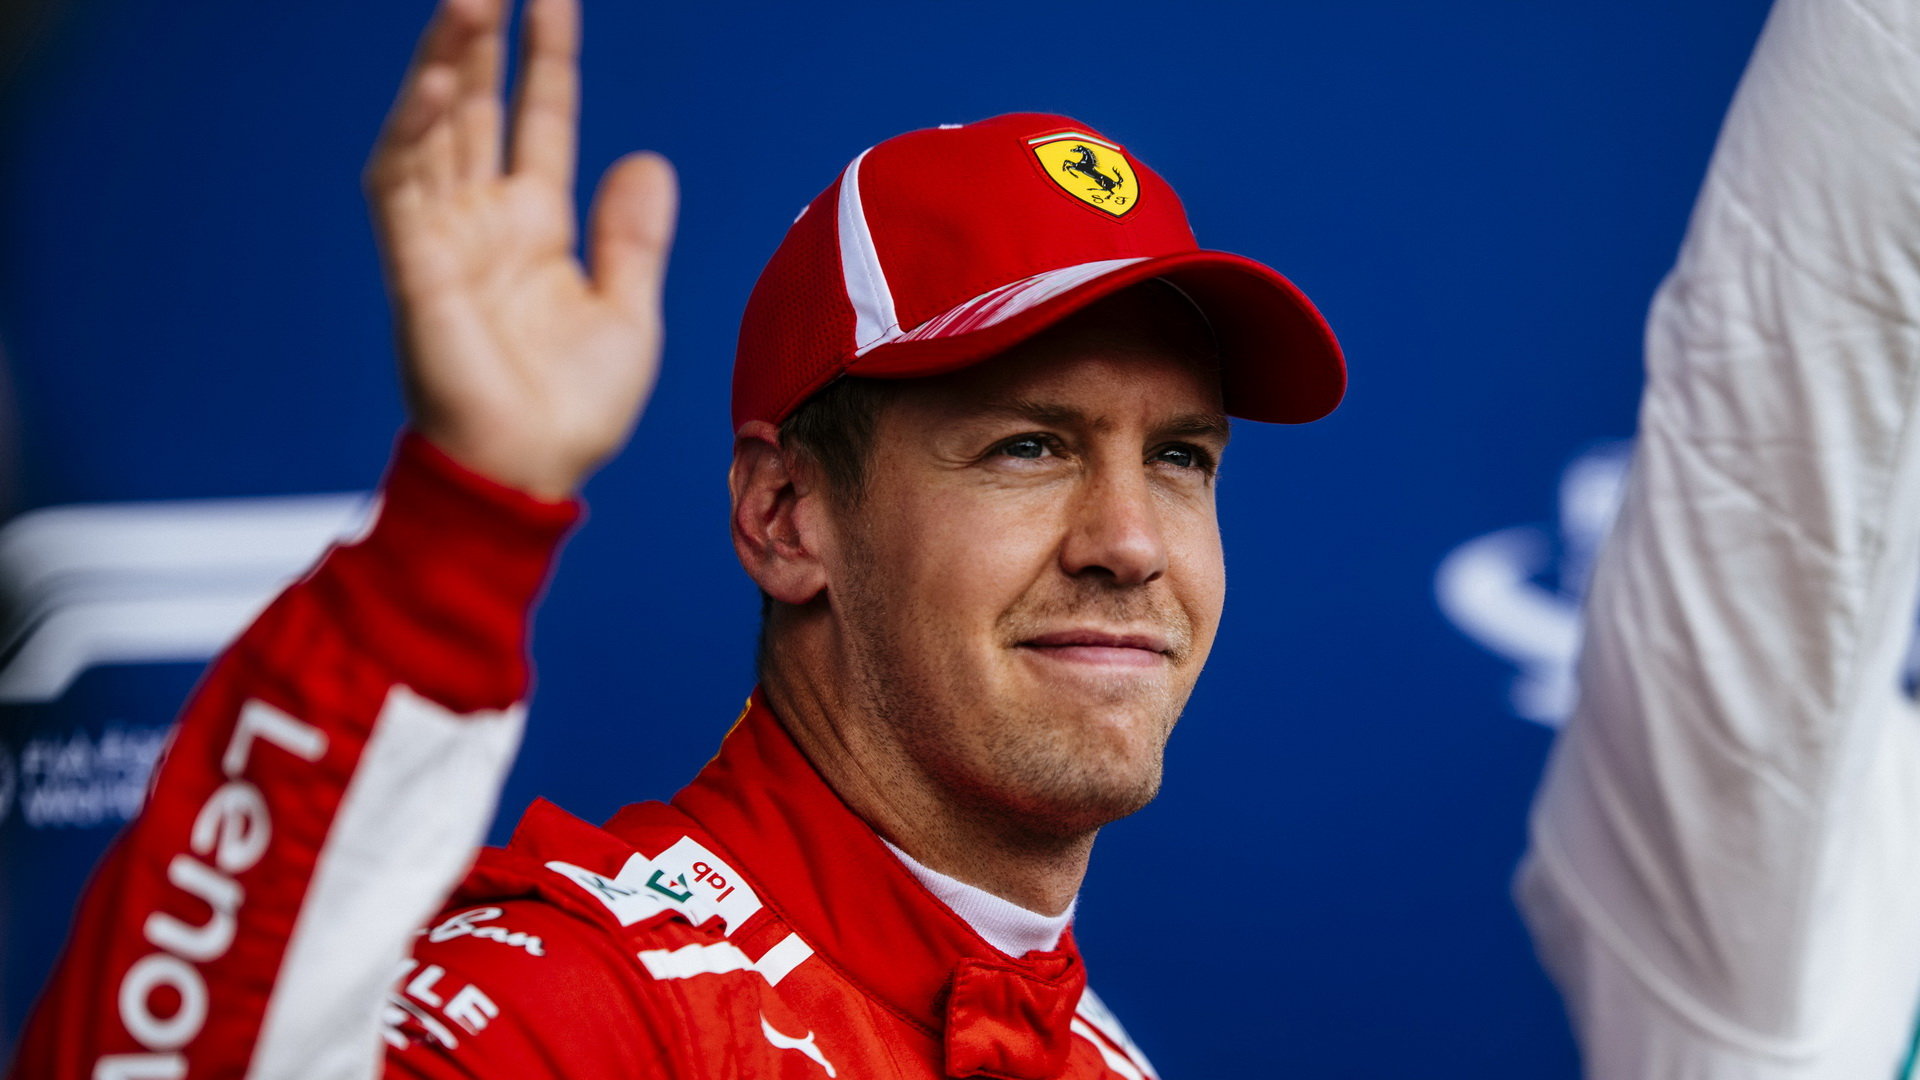 Sebastian Vettel přiznal chybu a zároveň si je jist, že před GP Itálie je v dobrém rozpoložení